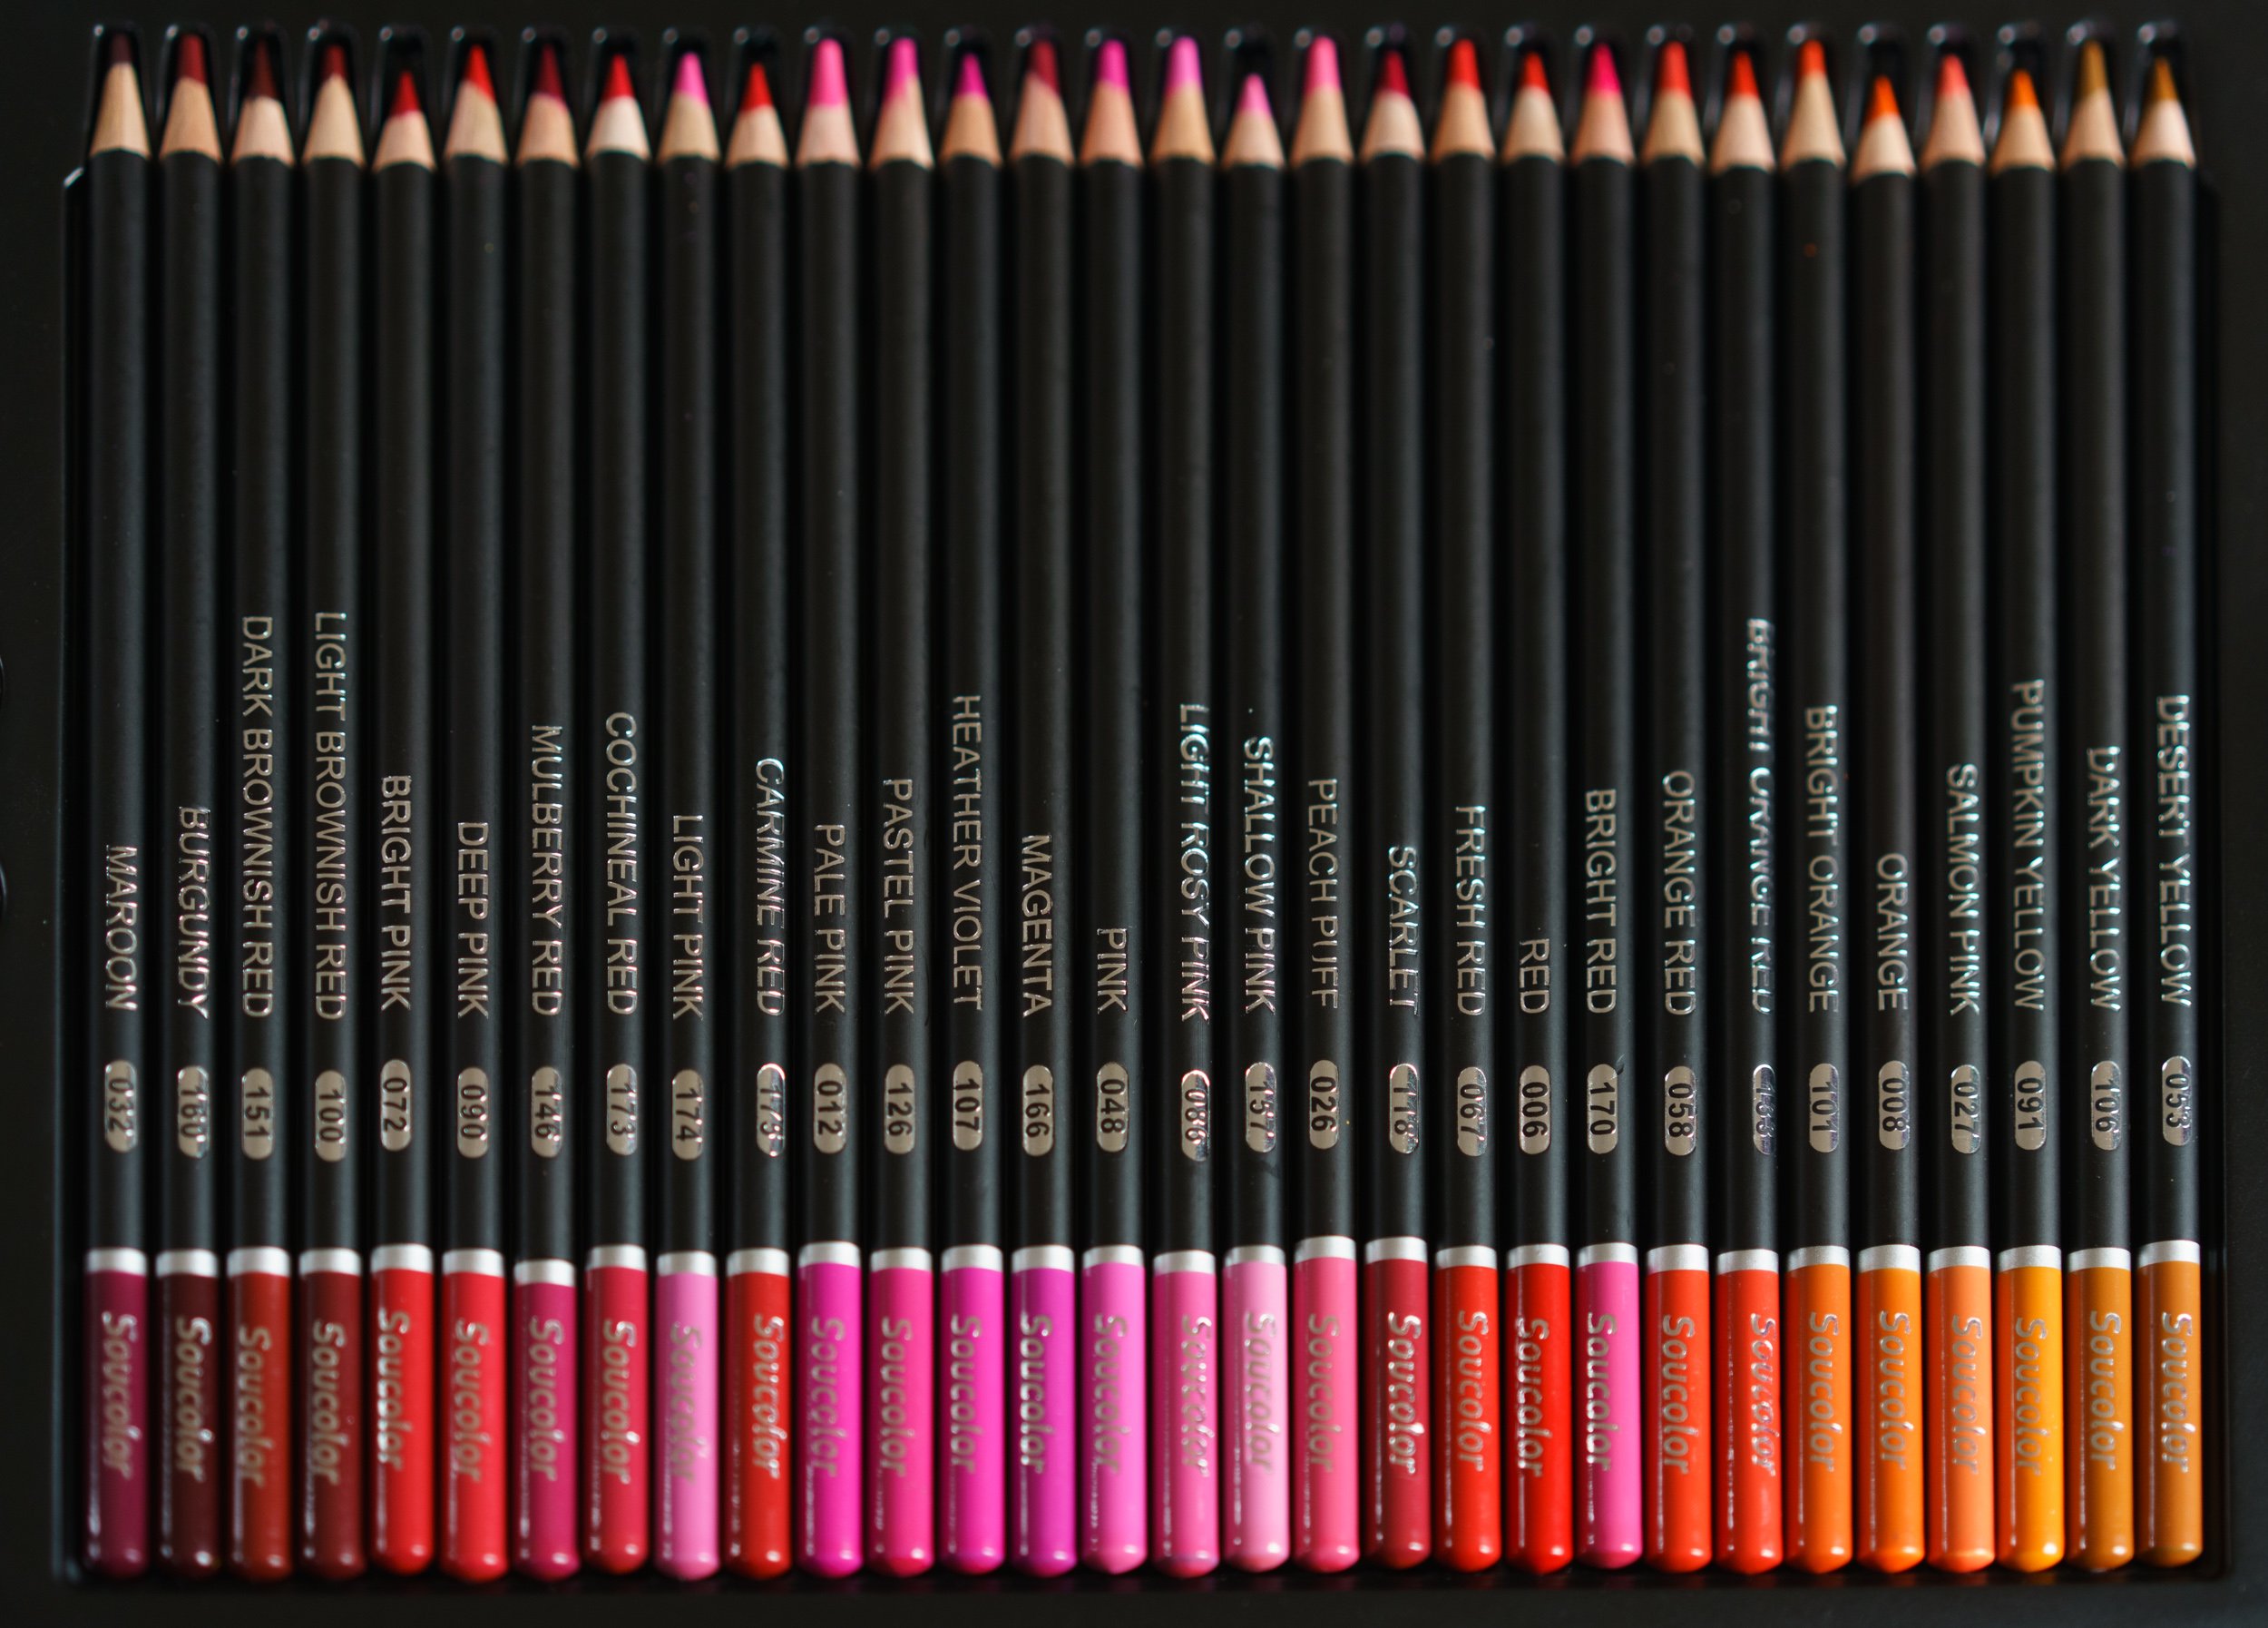 Soucolor 180-Color Artist Colored Pencils Set with Soucolor 9 x 12 Sketch  Book